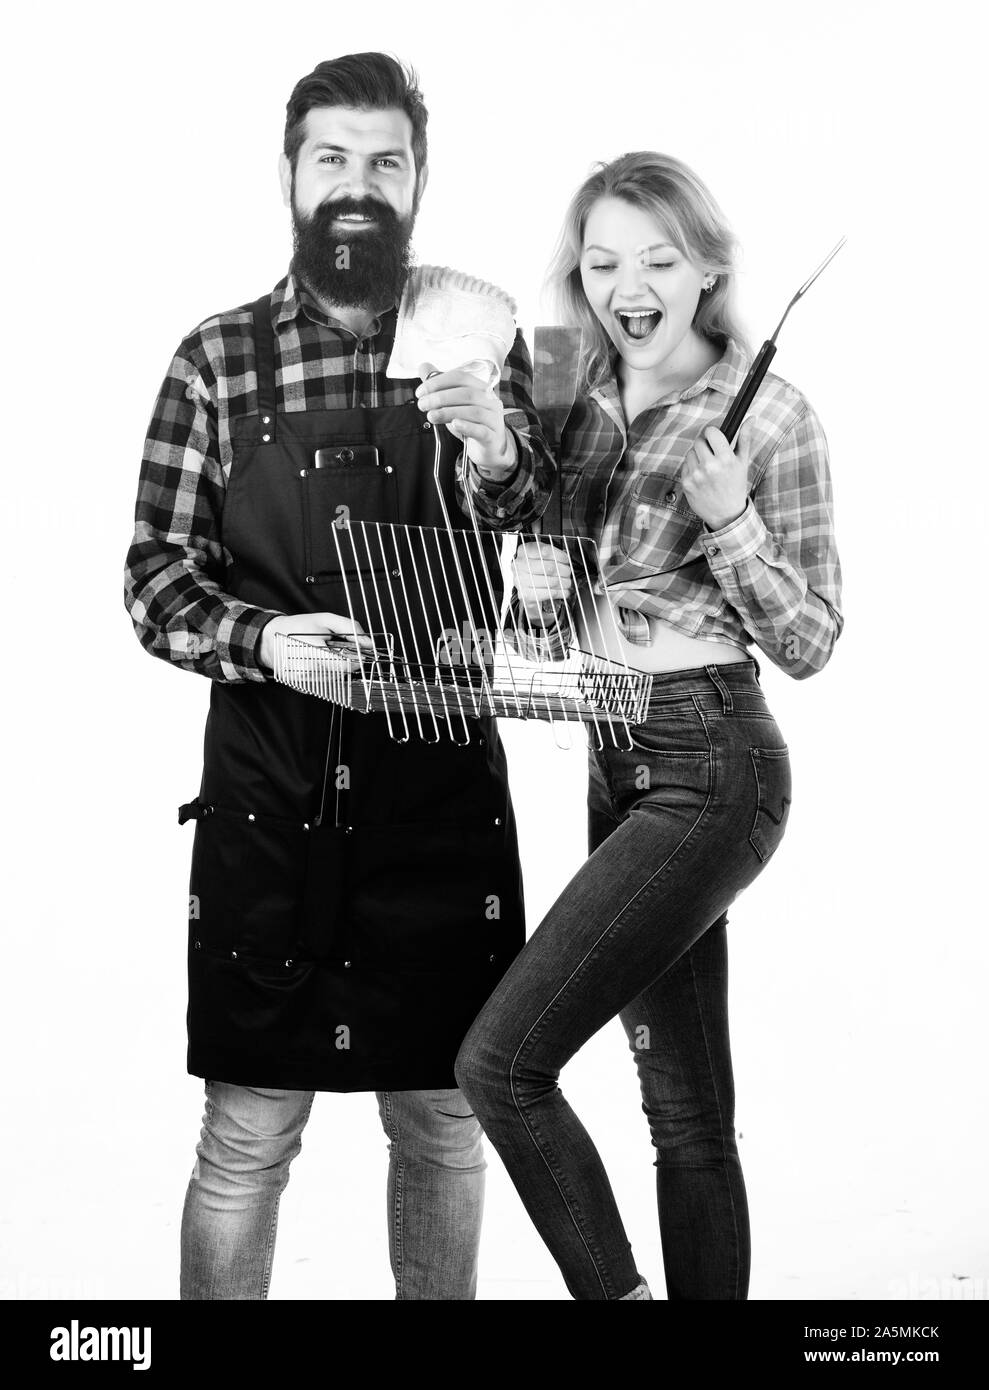 Joie de style de cuisine barbecue. Jolie femme et homme barbu tenant grille de cuisson. Couple heureux à l'aide de la grille de cuisson pour barbecue. Profitez de la cuisson des aliments sur le gril. Banque D'Images